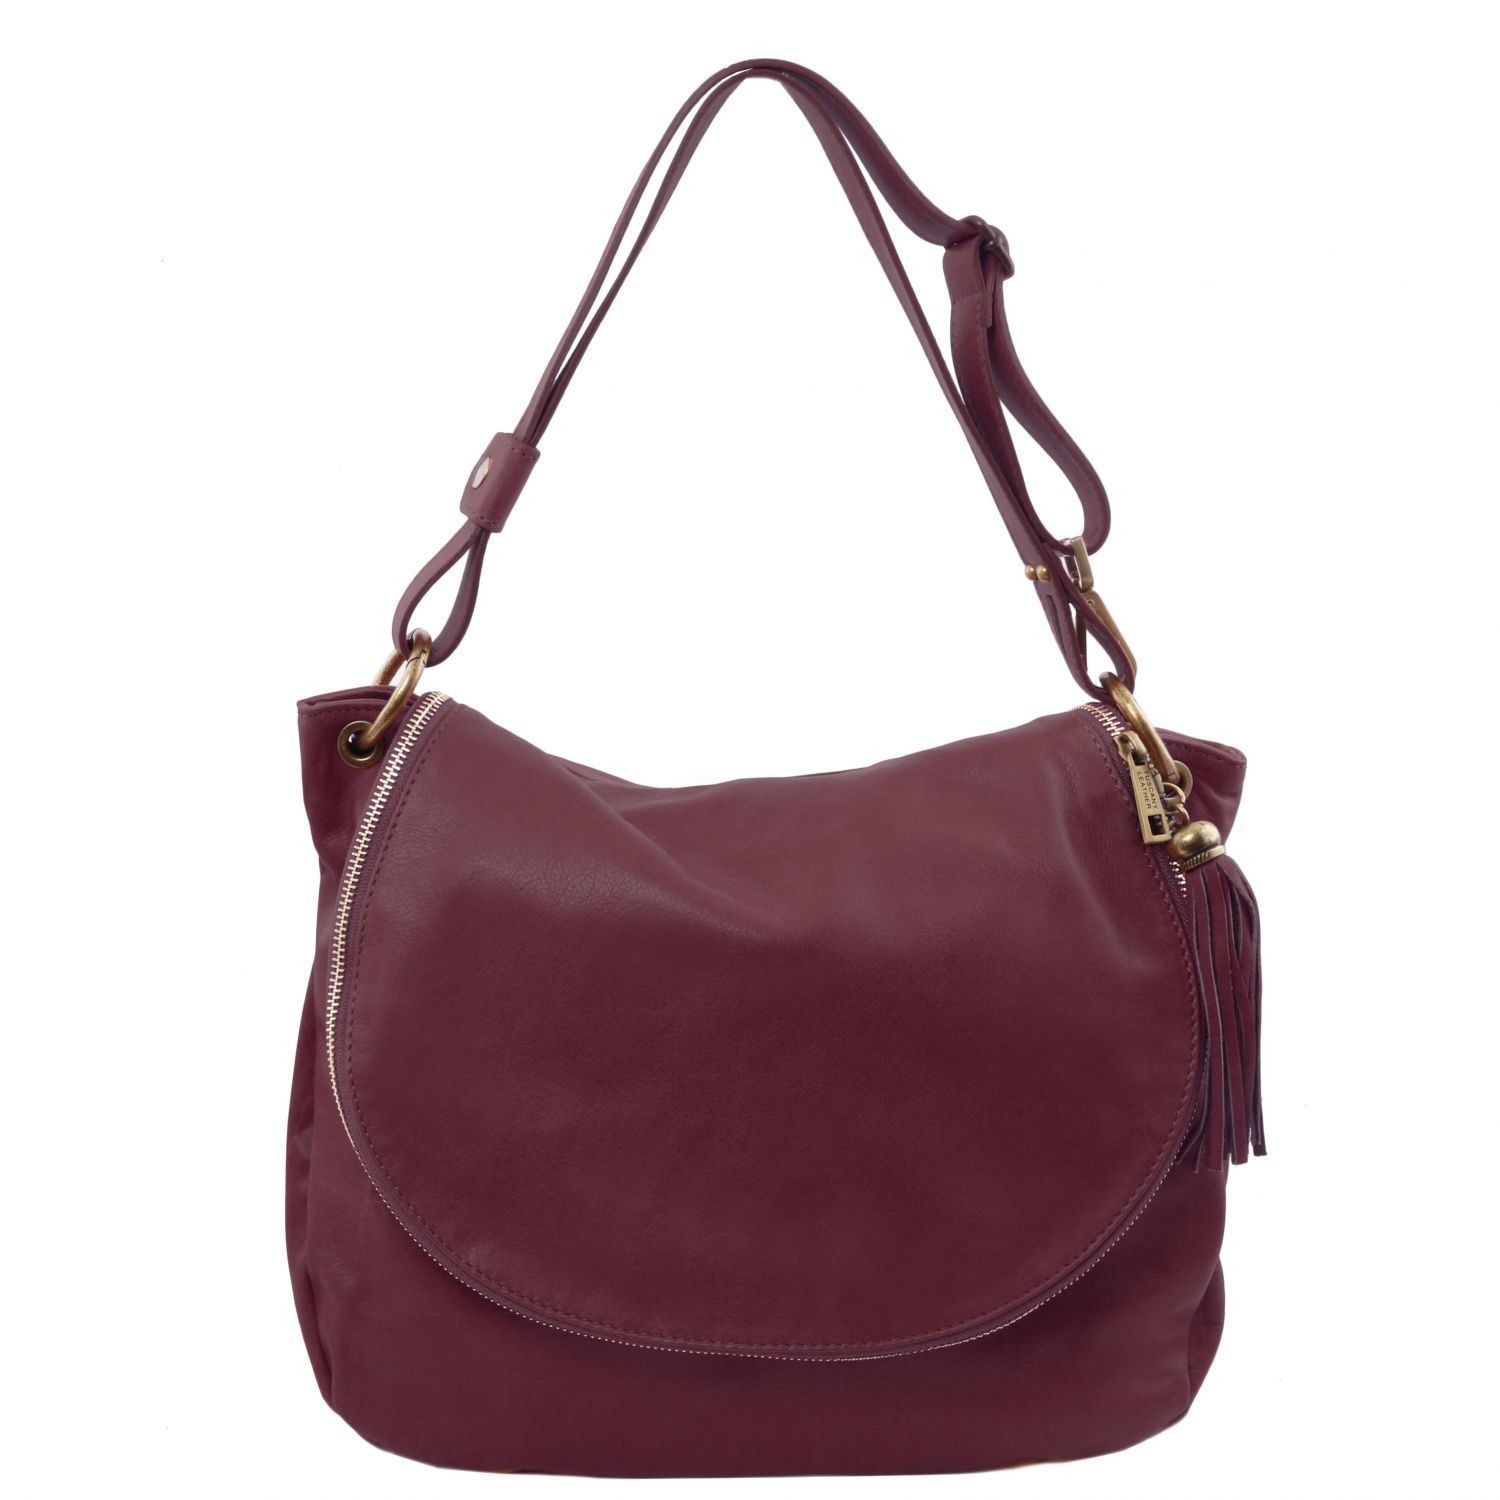 TL Bag Soft Leather Shoulder bag With Tassel Detail Bordeaux TL141110